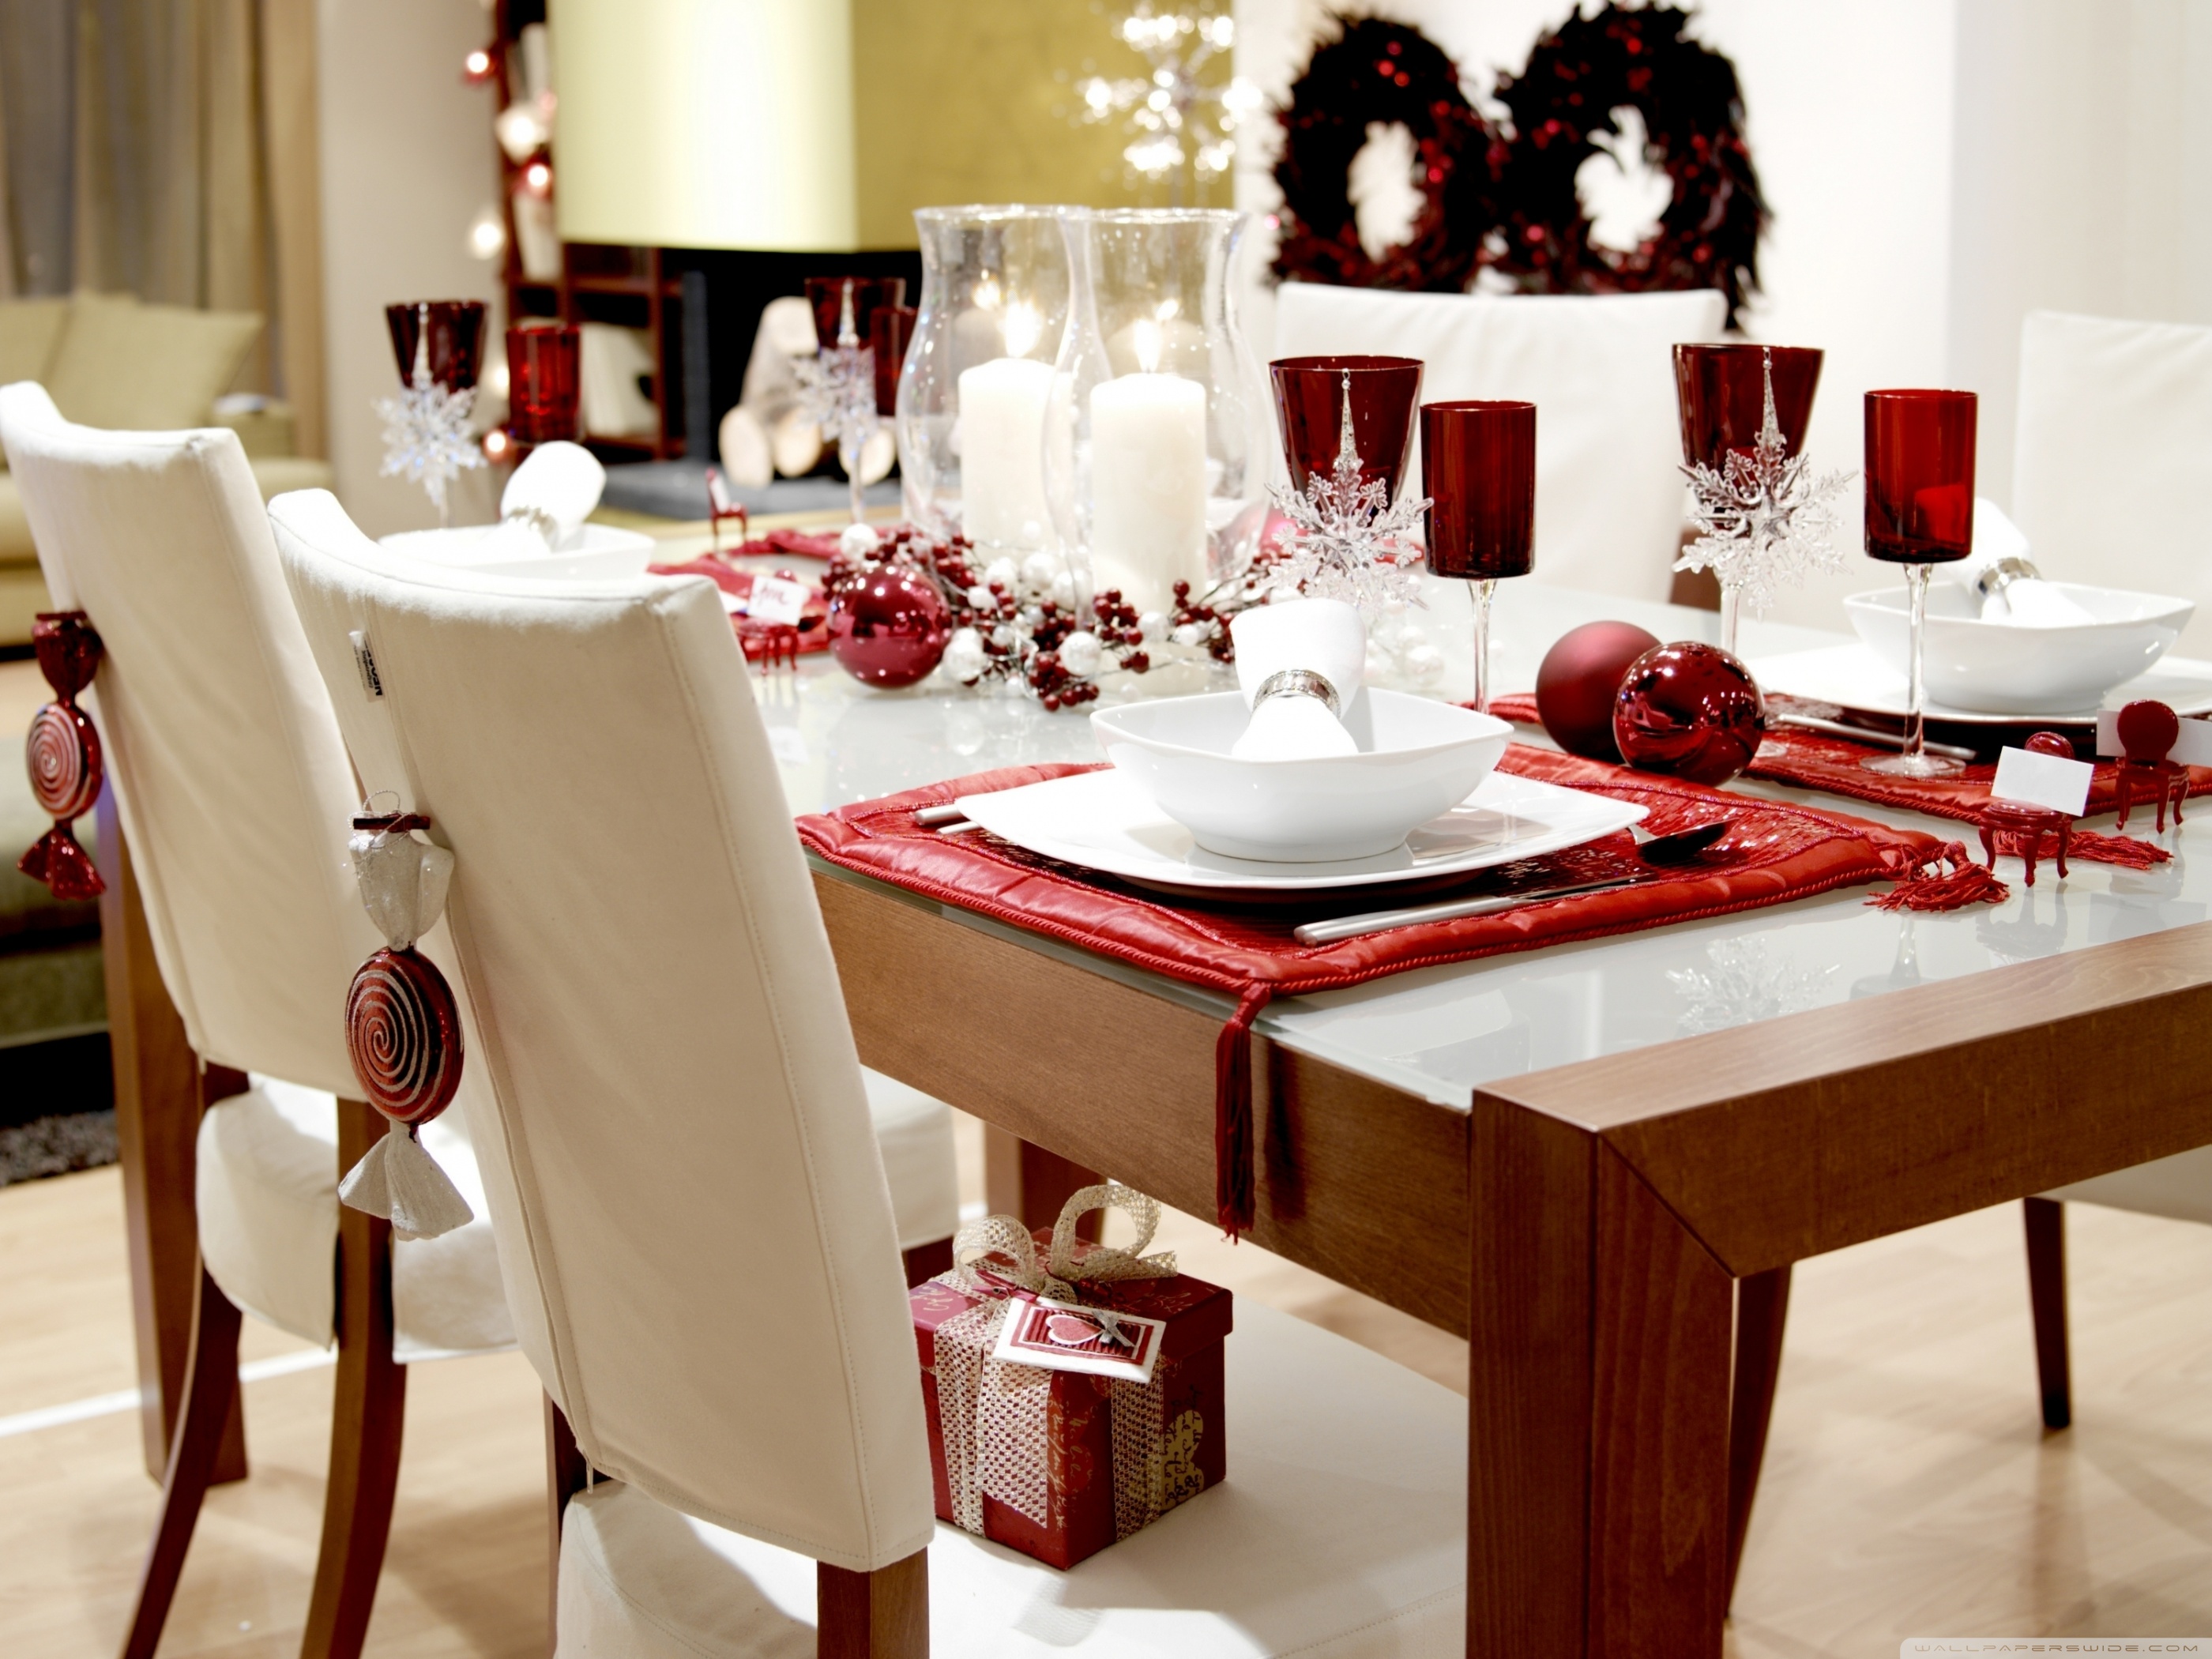 Картинки красивых столов. Сервировка стола. Сервировка новогоднего стола. Сервировка обеденного стола. Красивый стол.